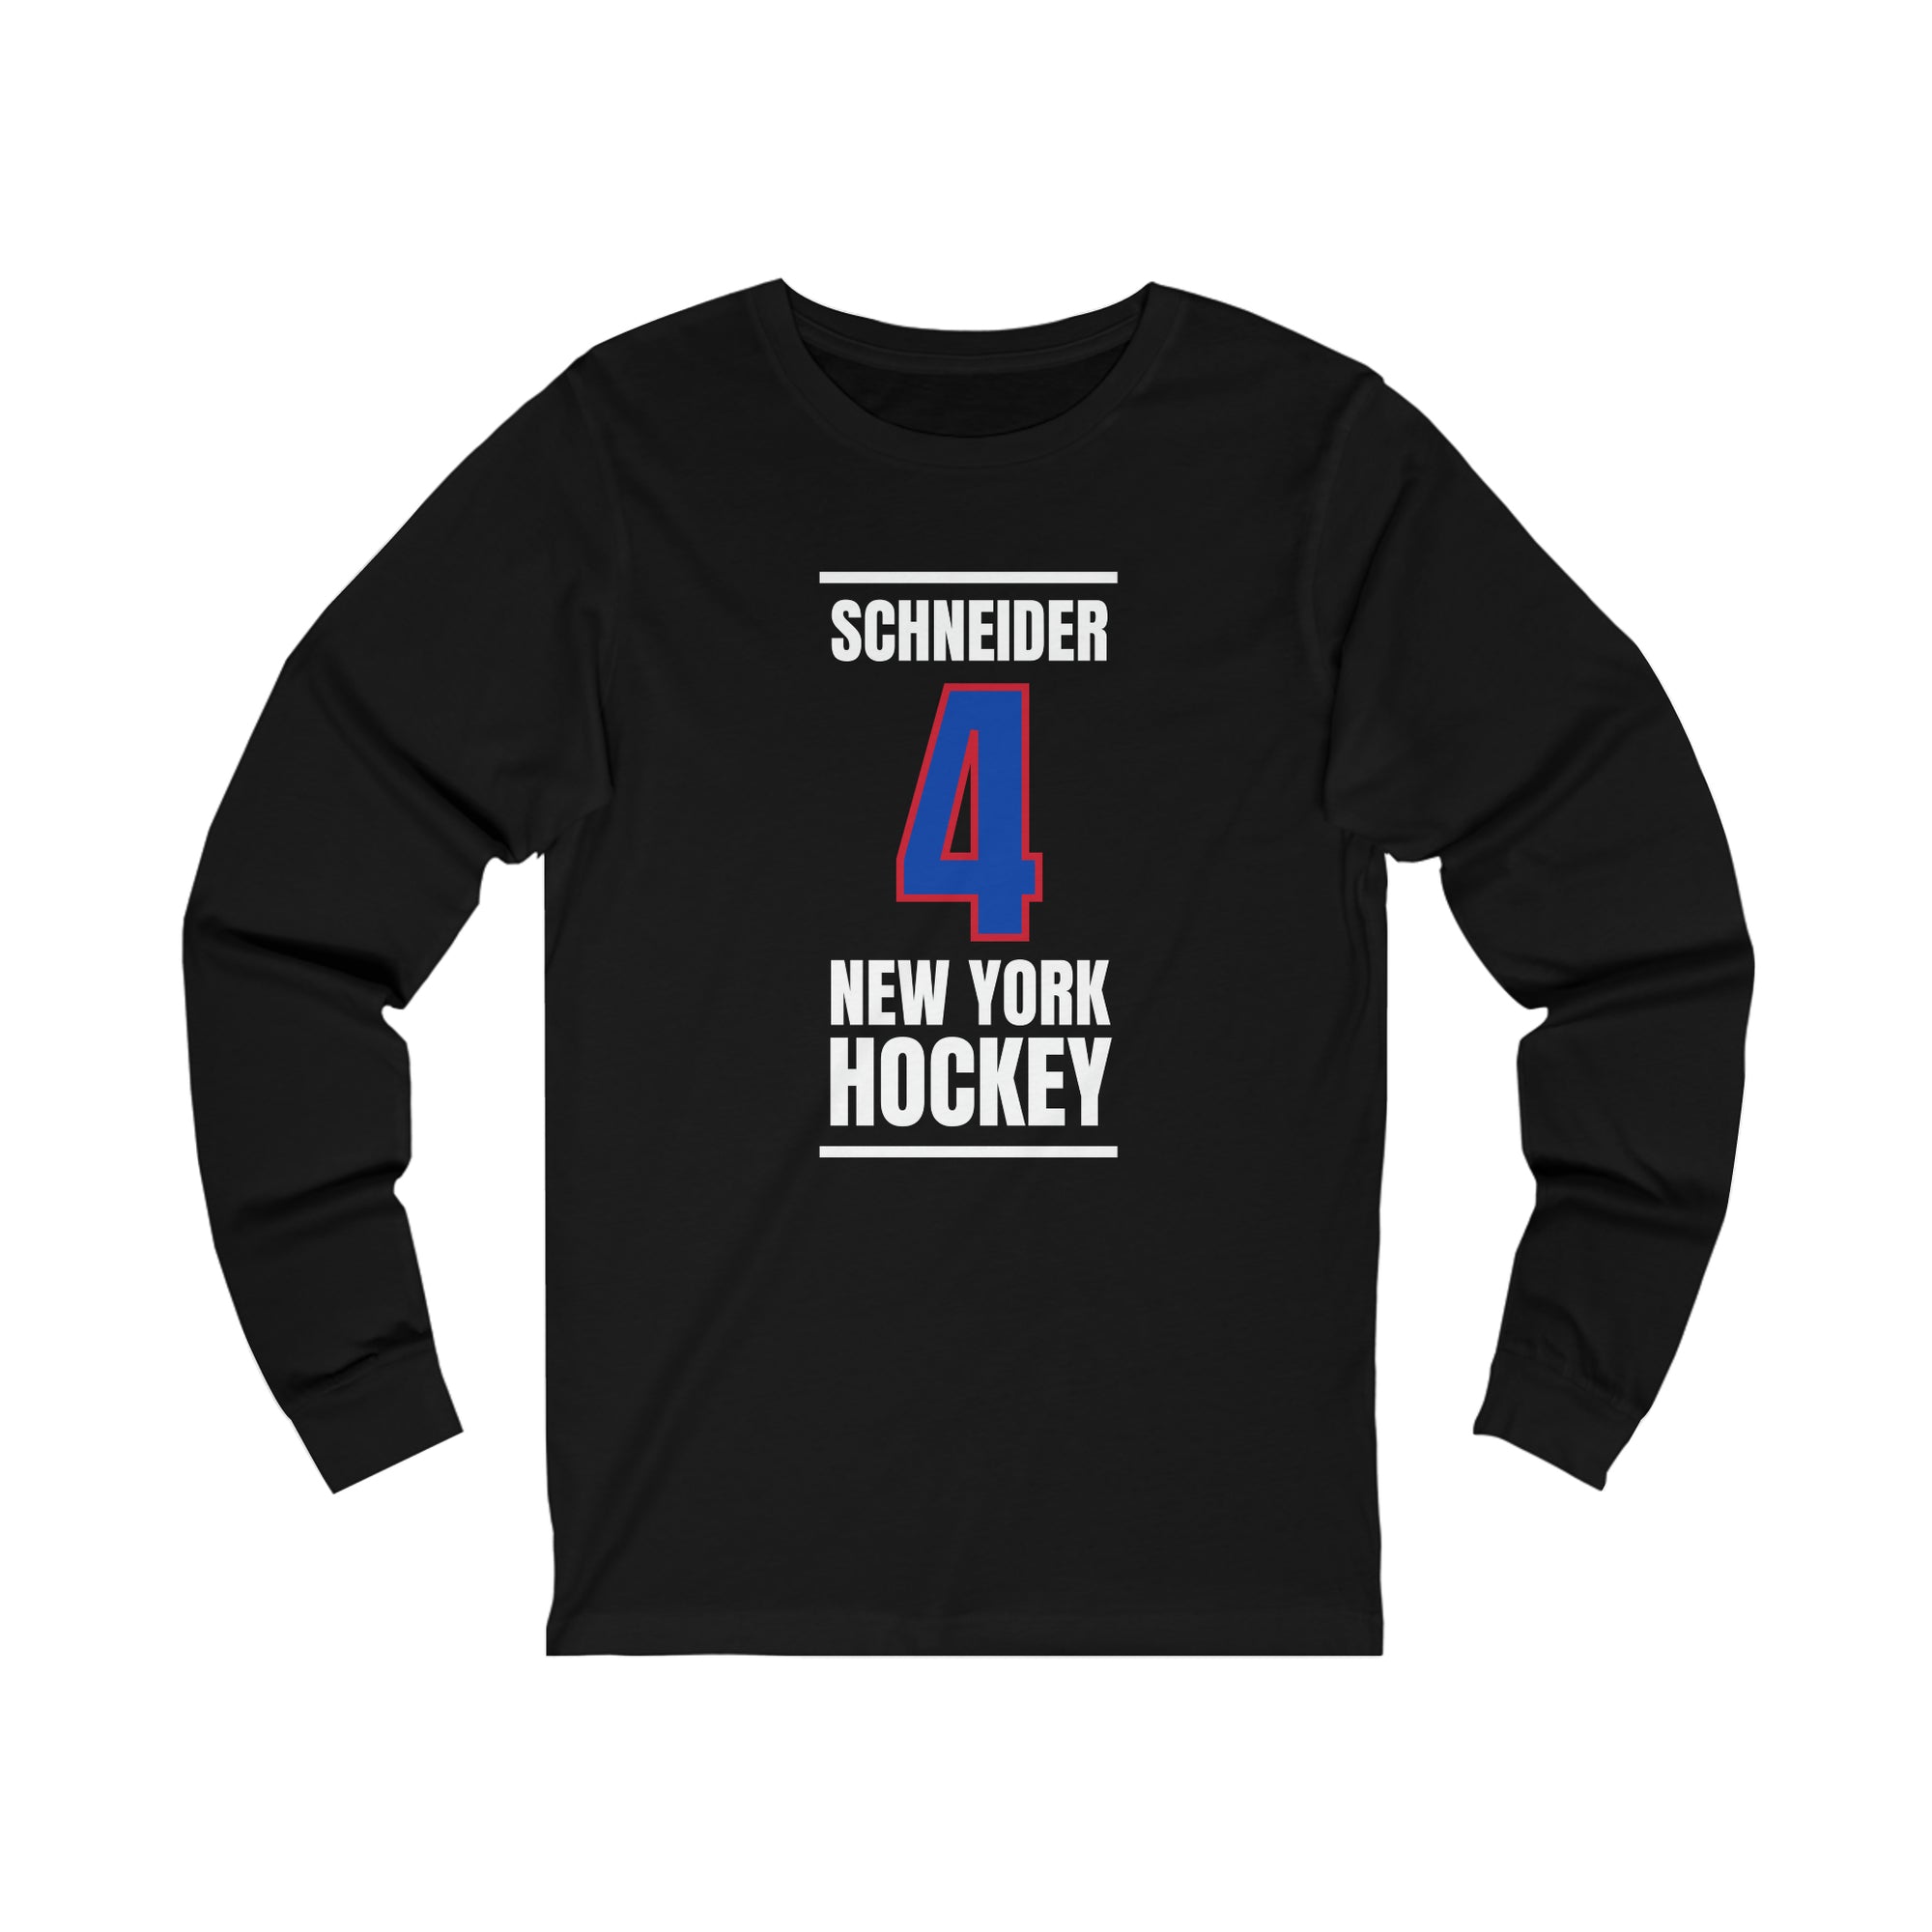 Schneider 4 New York Hockey Royal Blue Vertical Design Unisex Jersey Long Sleeve Shirt